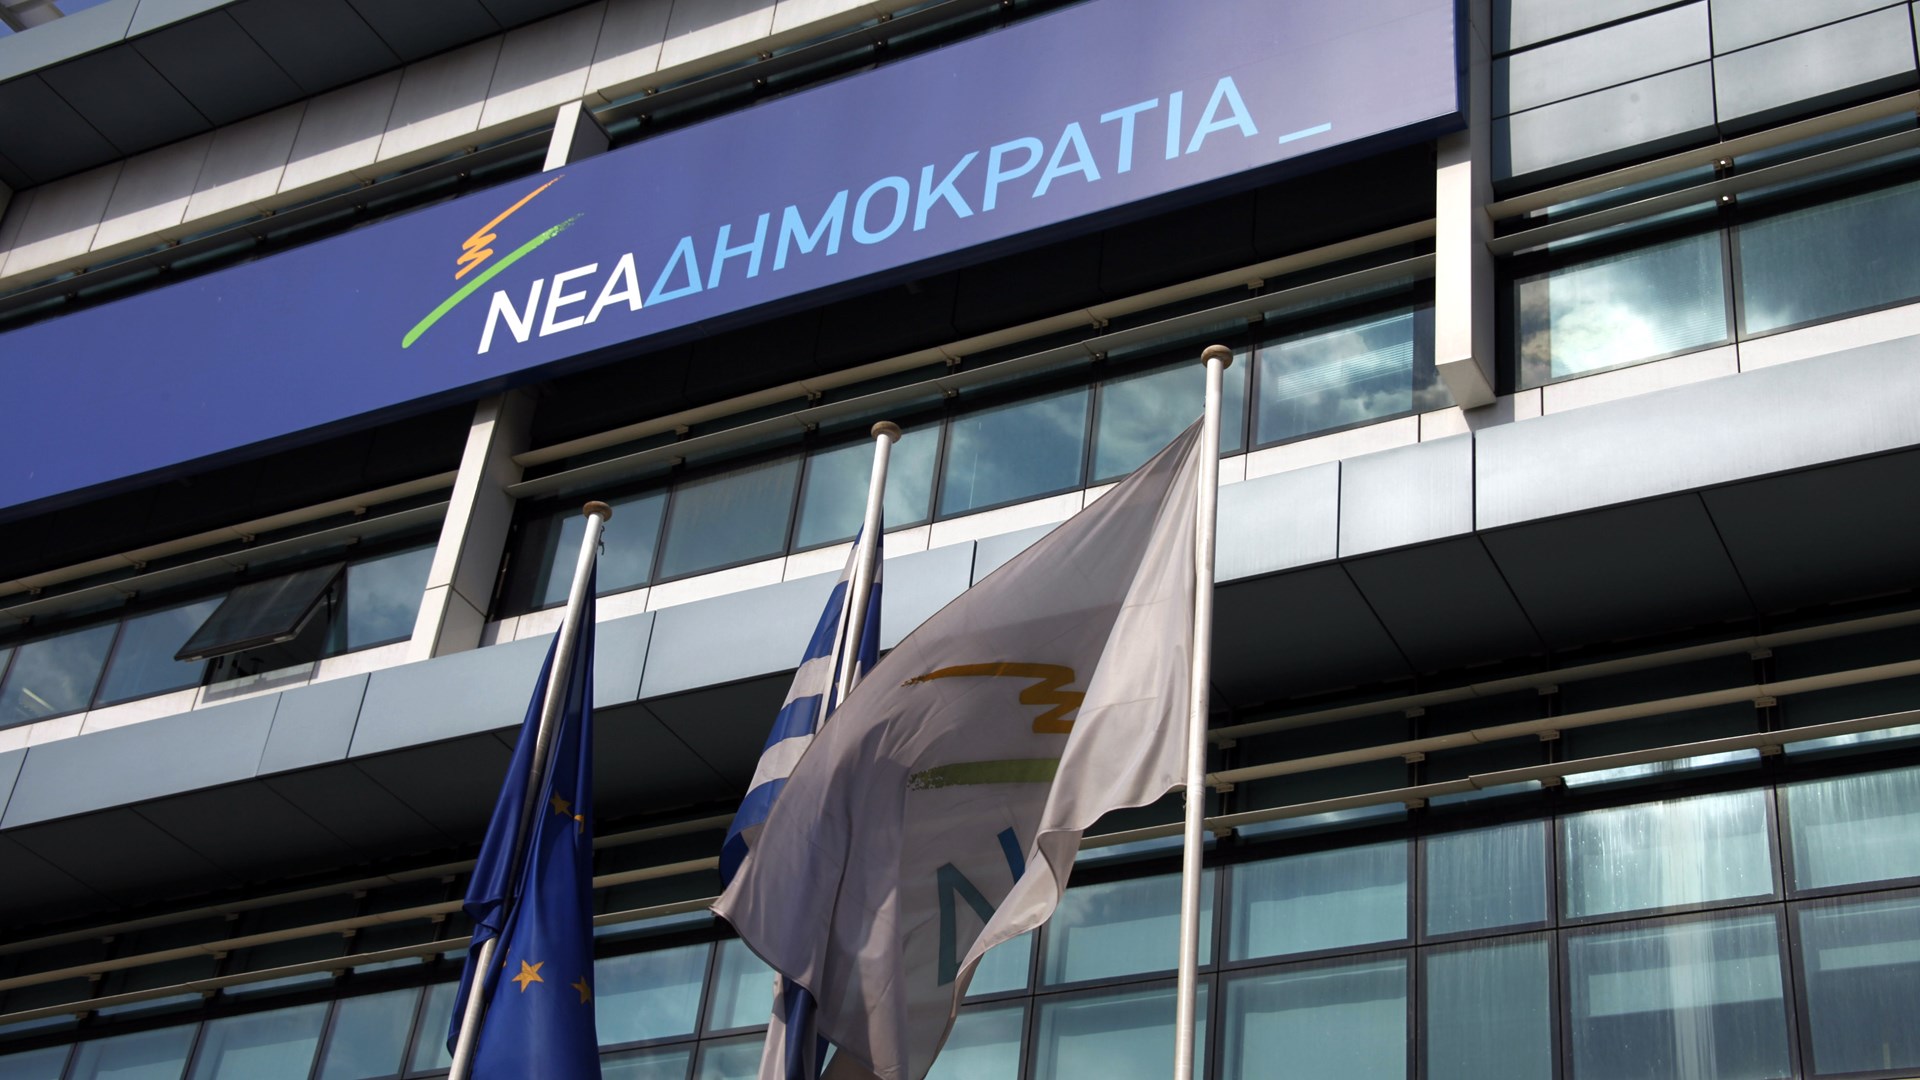 ΝΔ: «Ο κ. Τσίπρας είναι αστείος στο ρόλο του σοβαρού και υπεύθυνου πρωθυπουργού»